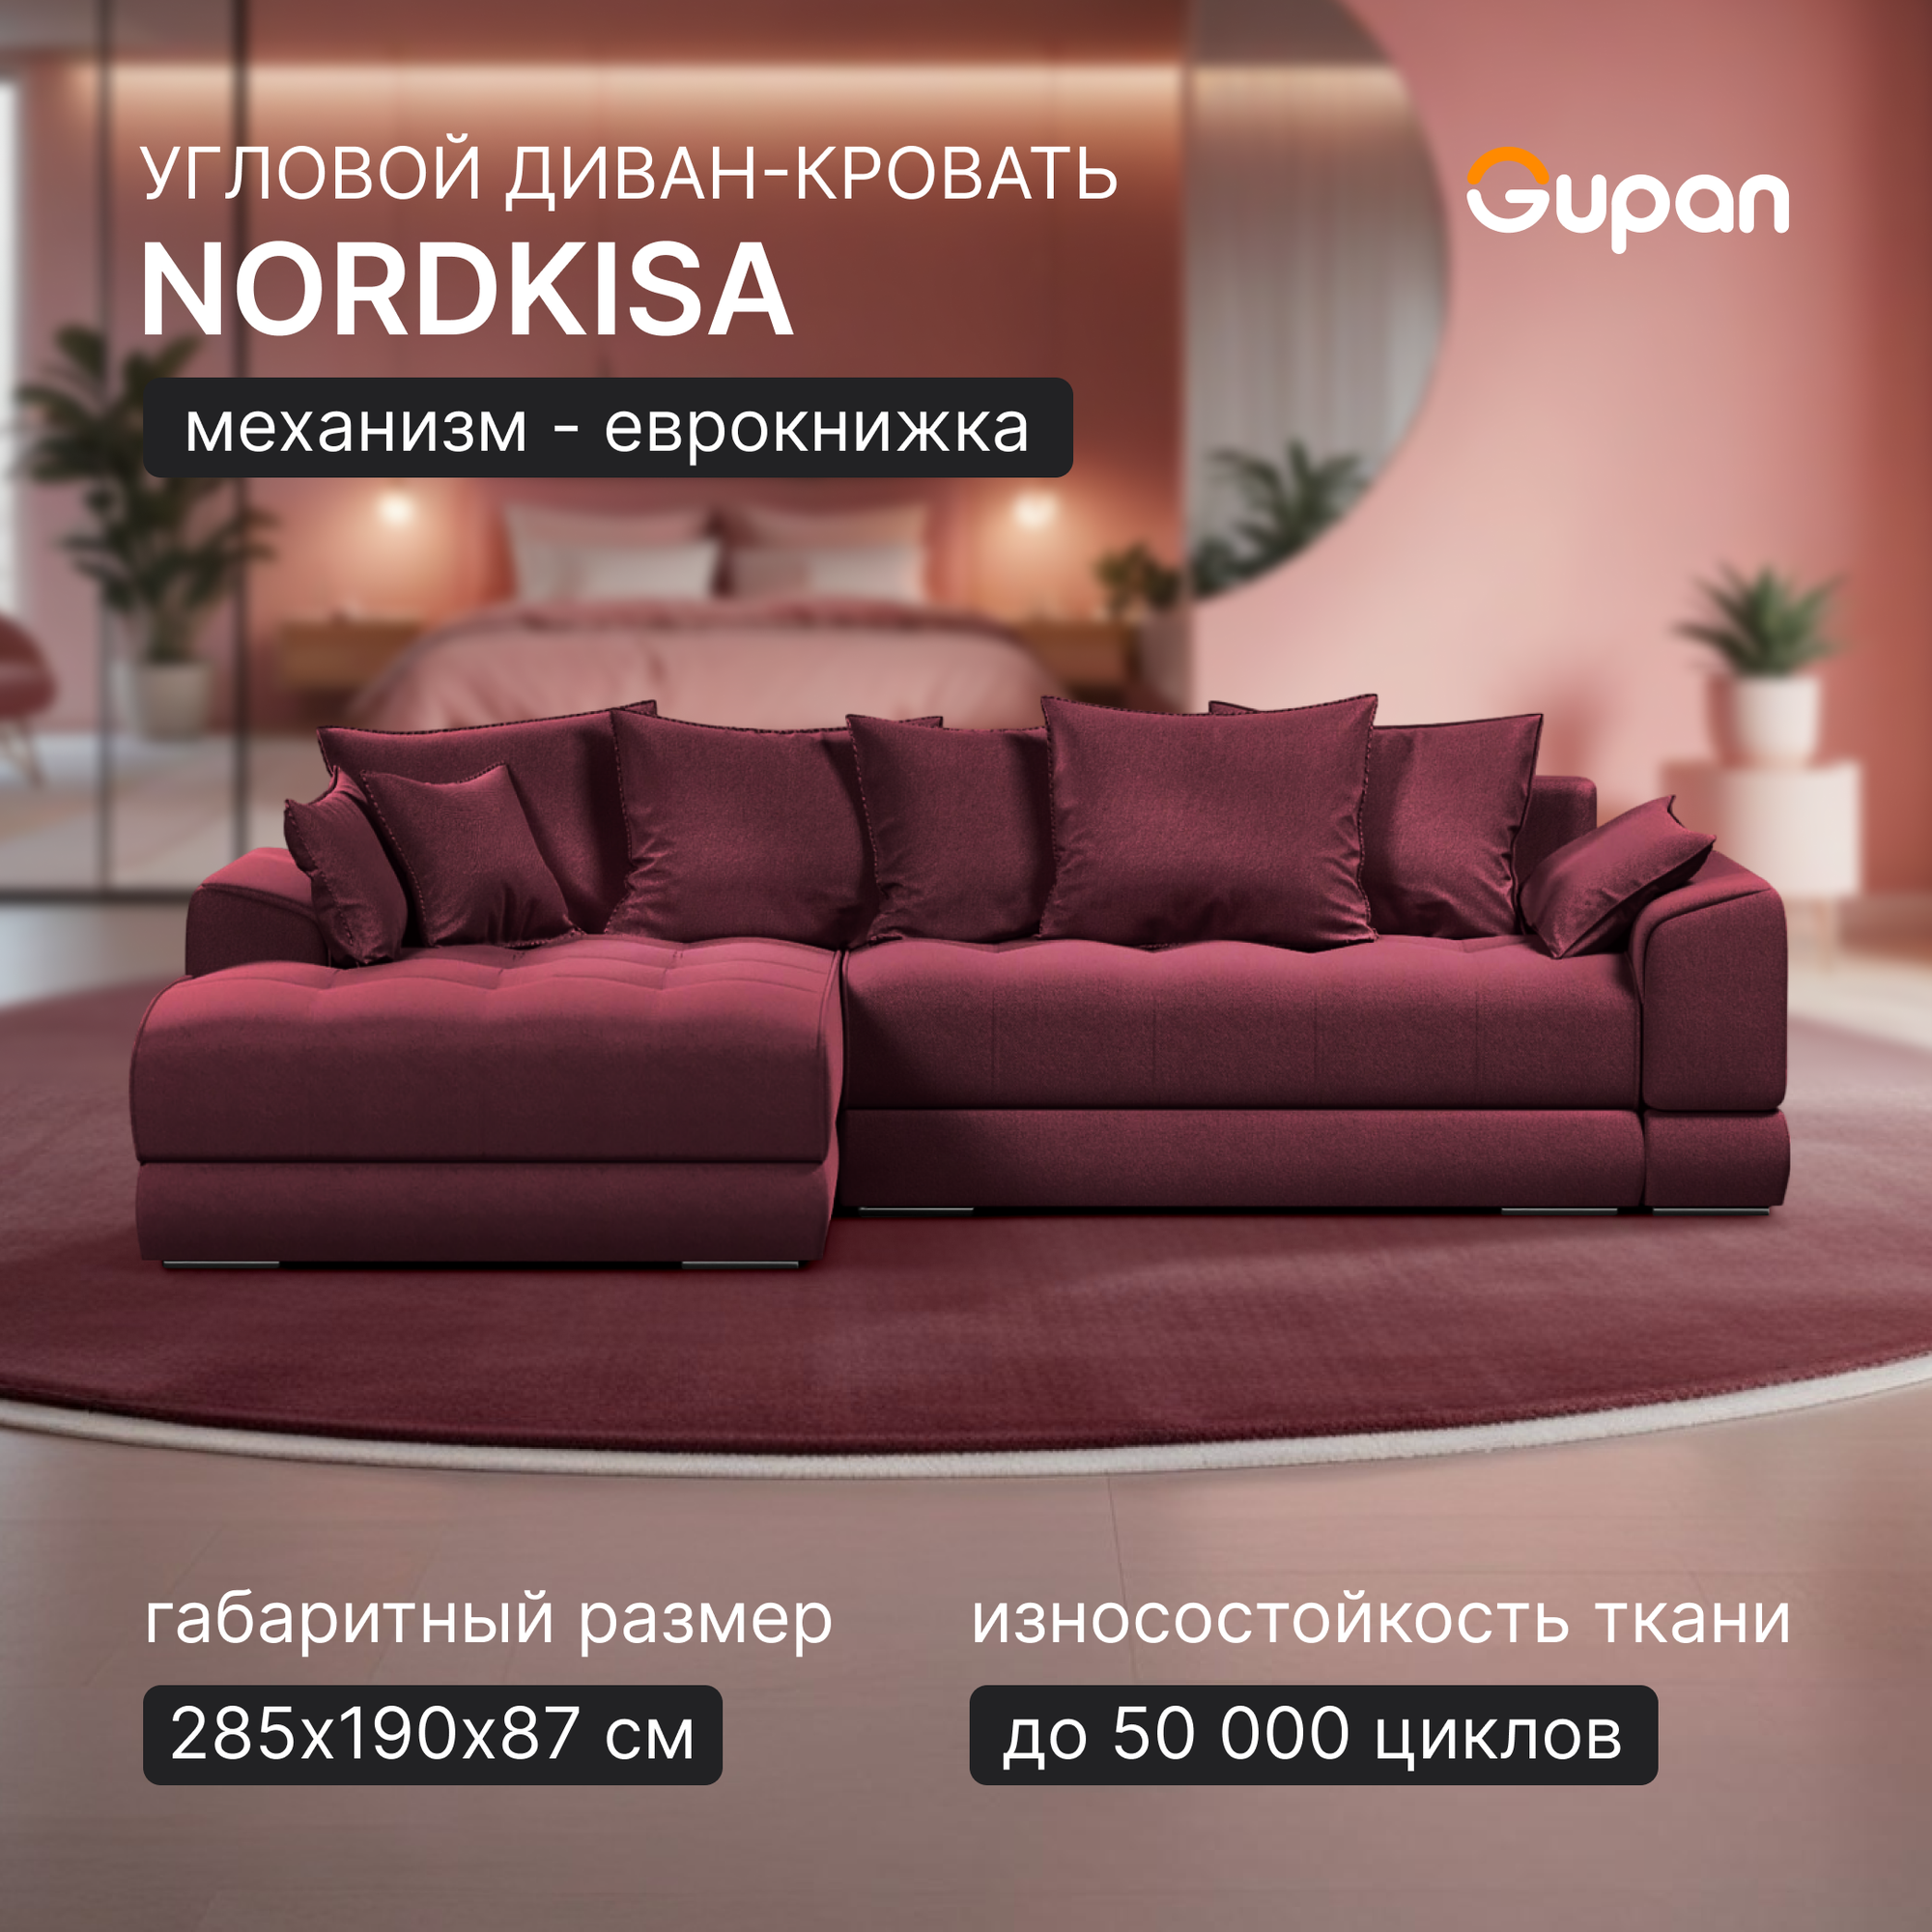 Угловой диван-кровать Gupan Nordkisa, механизм Еврокнижка, 285х190х87 см, наполнитель ППУ, ящик для белья, цвет Amigo Dimrose, угол слева